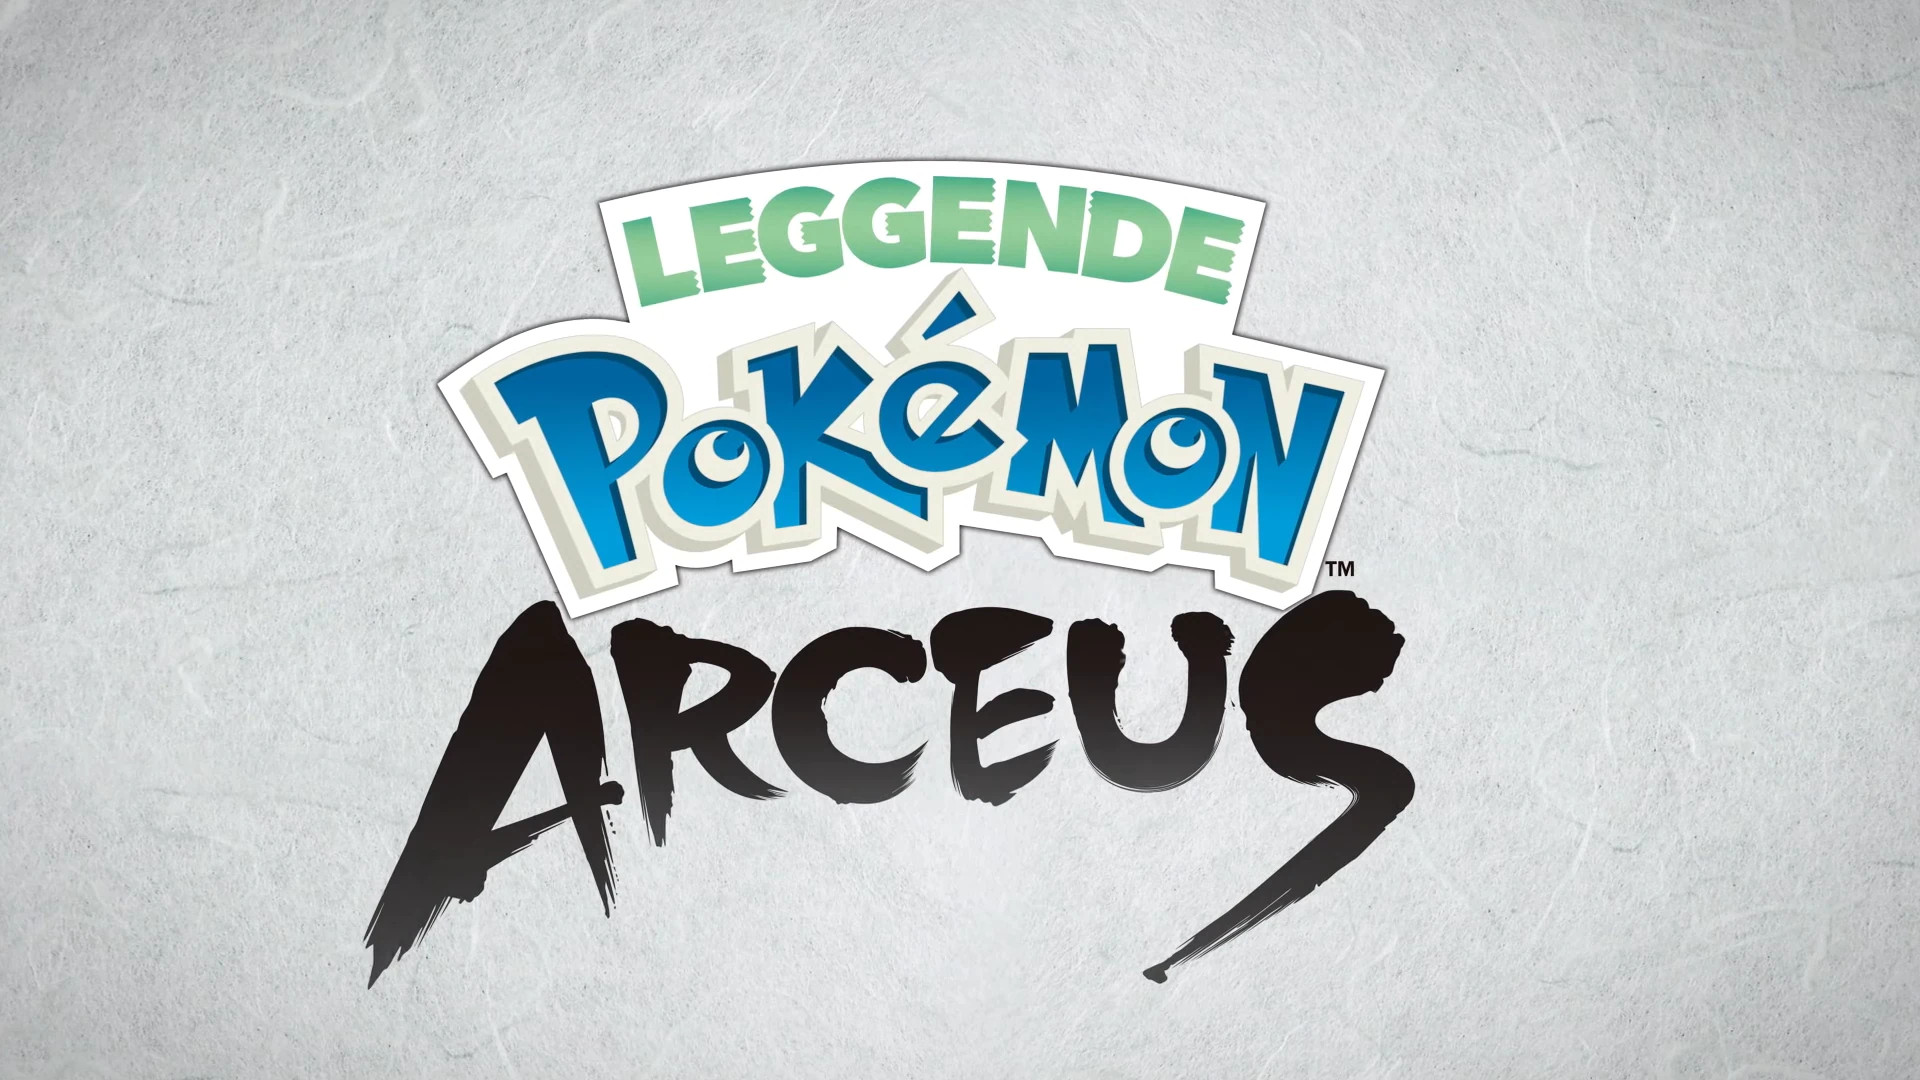 Leggende Pokémon Arceus: nuovo breve trailer del titolo